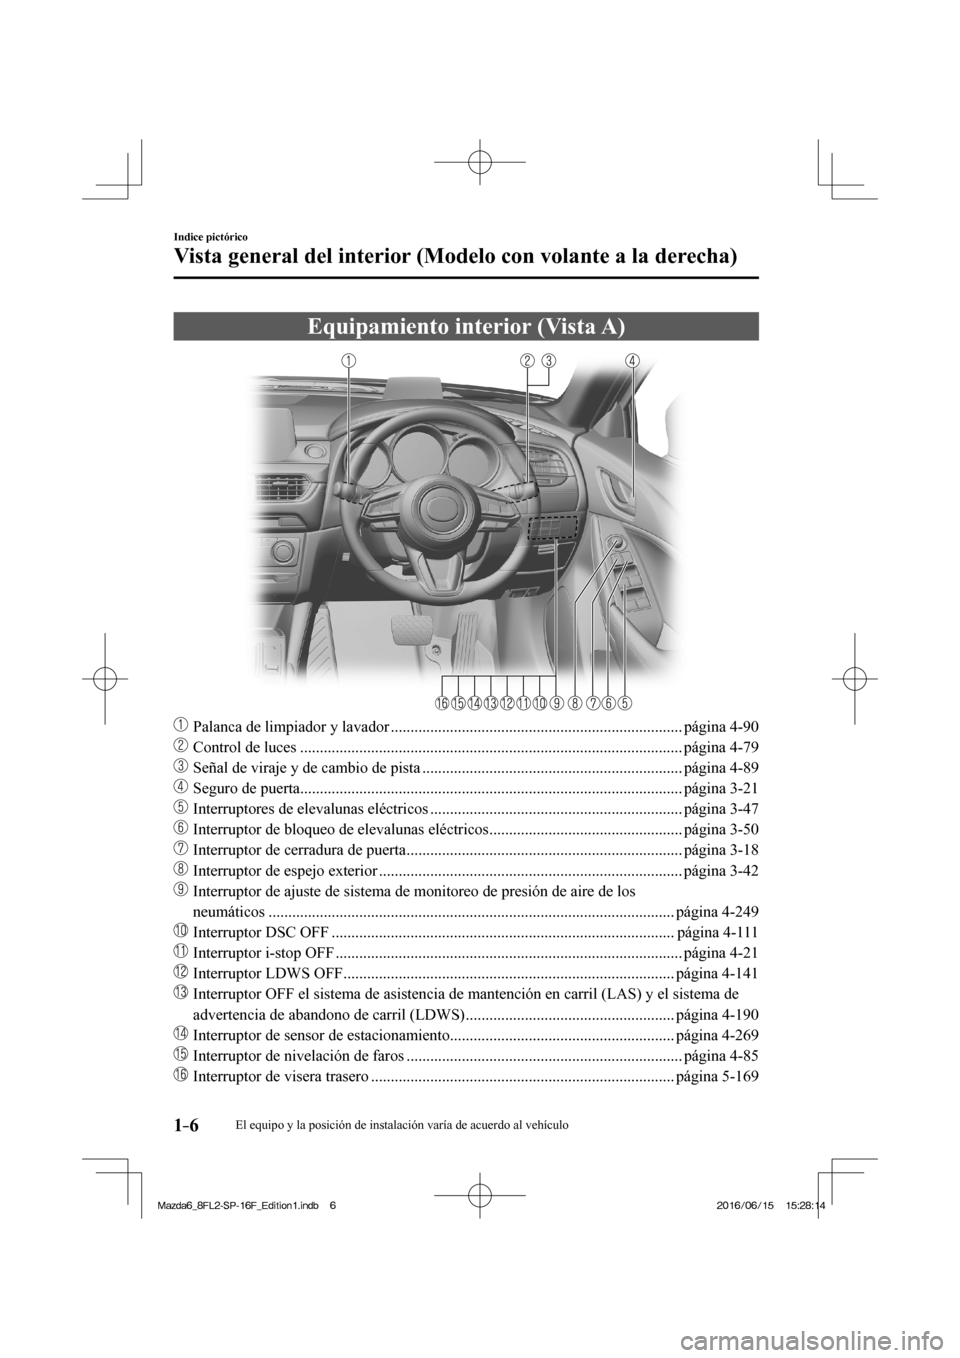 MAZDA MODEL 6 2017  Manual del propietario (in Spanish) 1–6
Indice pictórico
Vista general del interior (Modelo con volante a la derecha)
      Equipamiento  interior  (Vista  A)
    
���
  Palanca de limpiador y lavador .............................